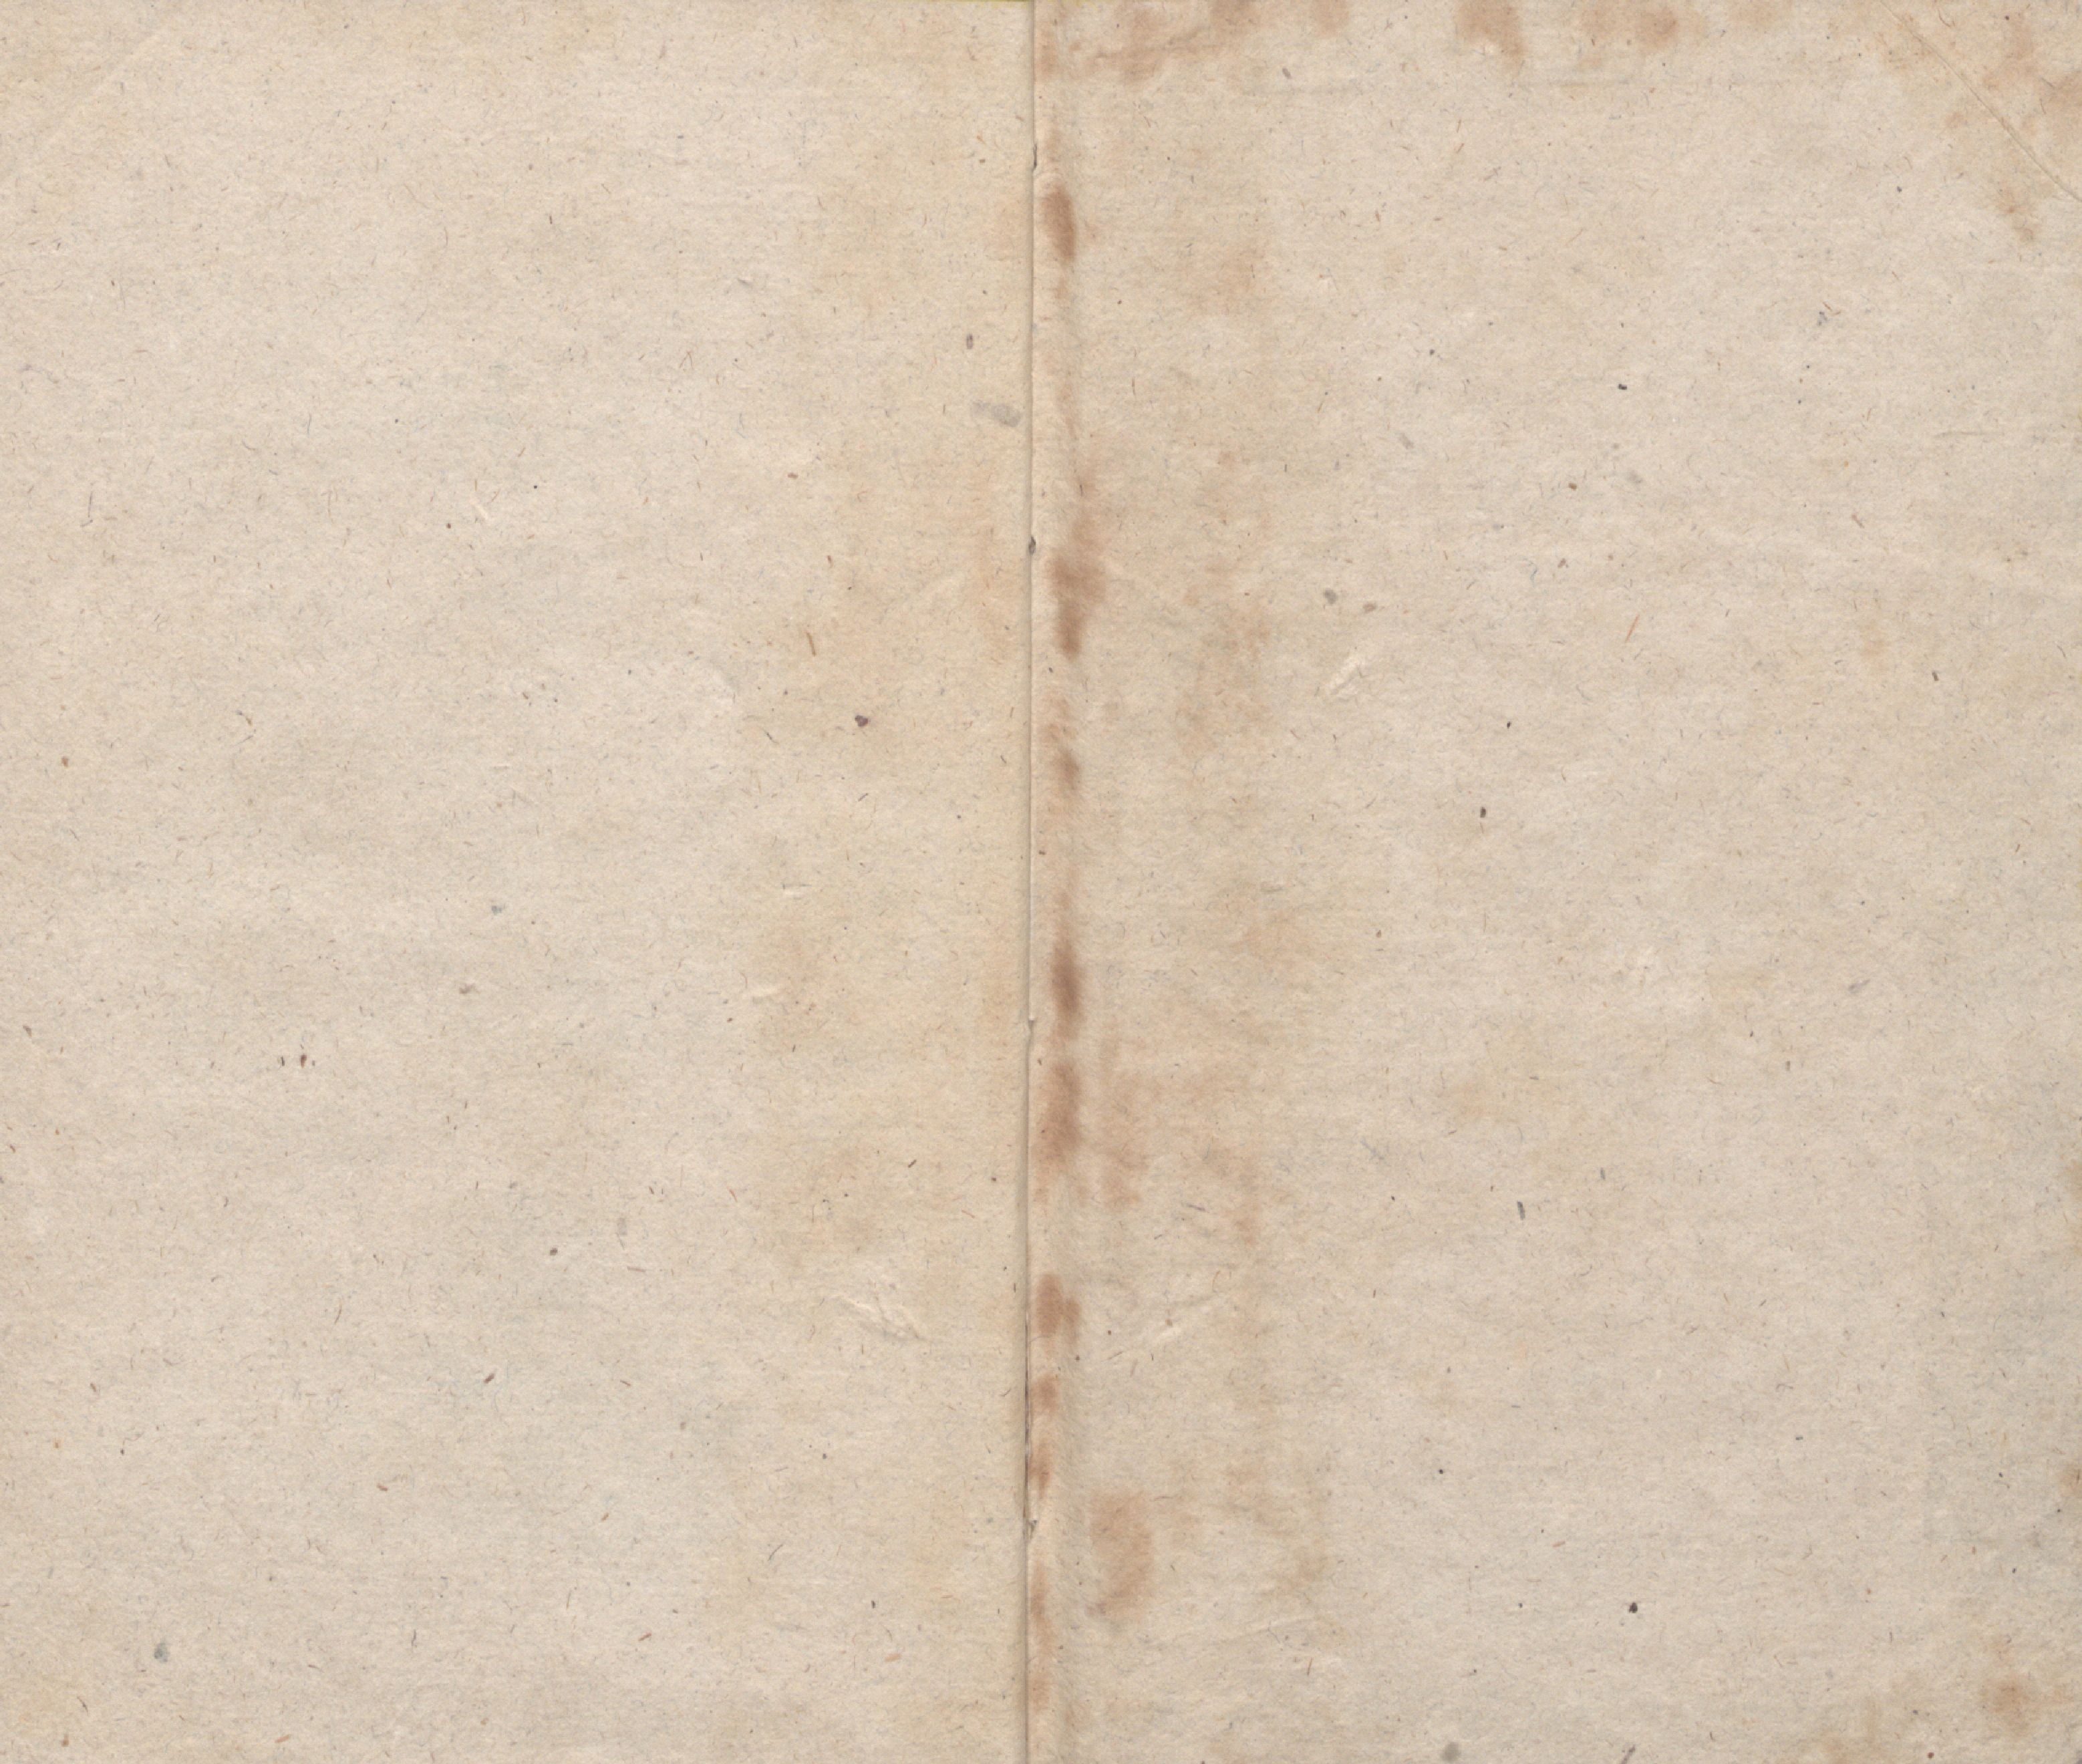 Lillikessed [1] (1814) | 12. Задний форзац